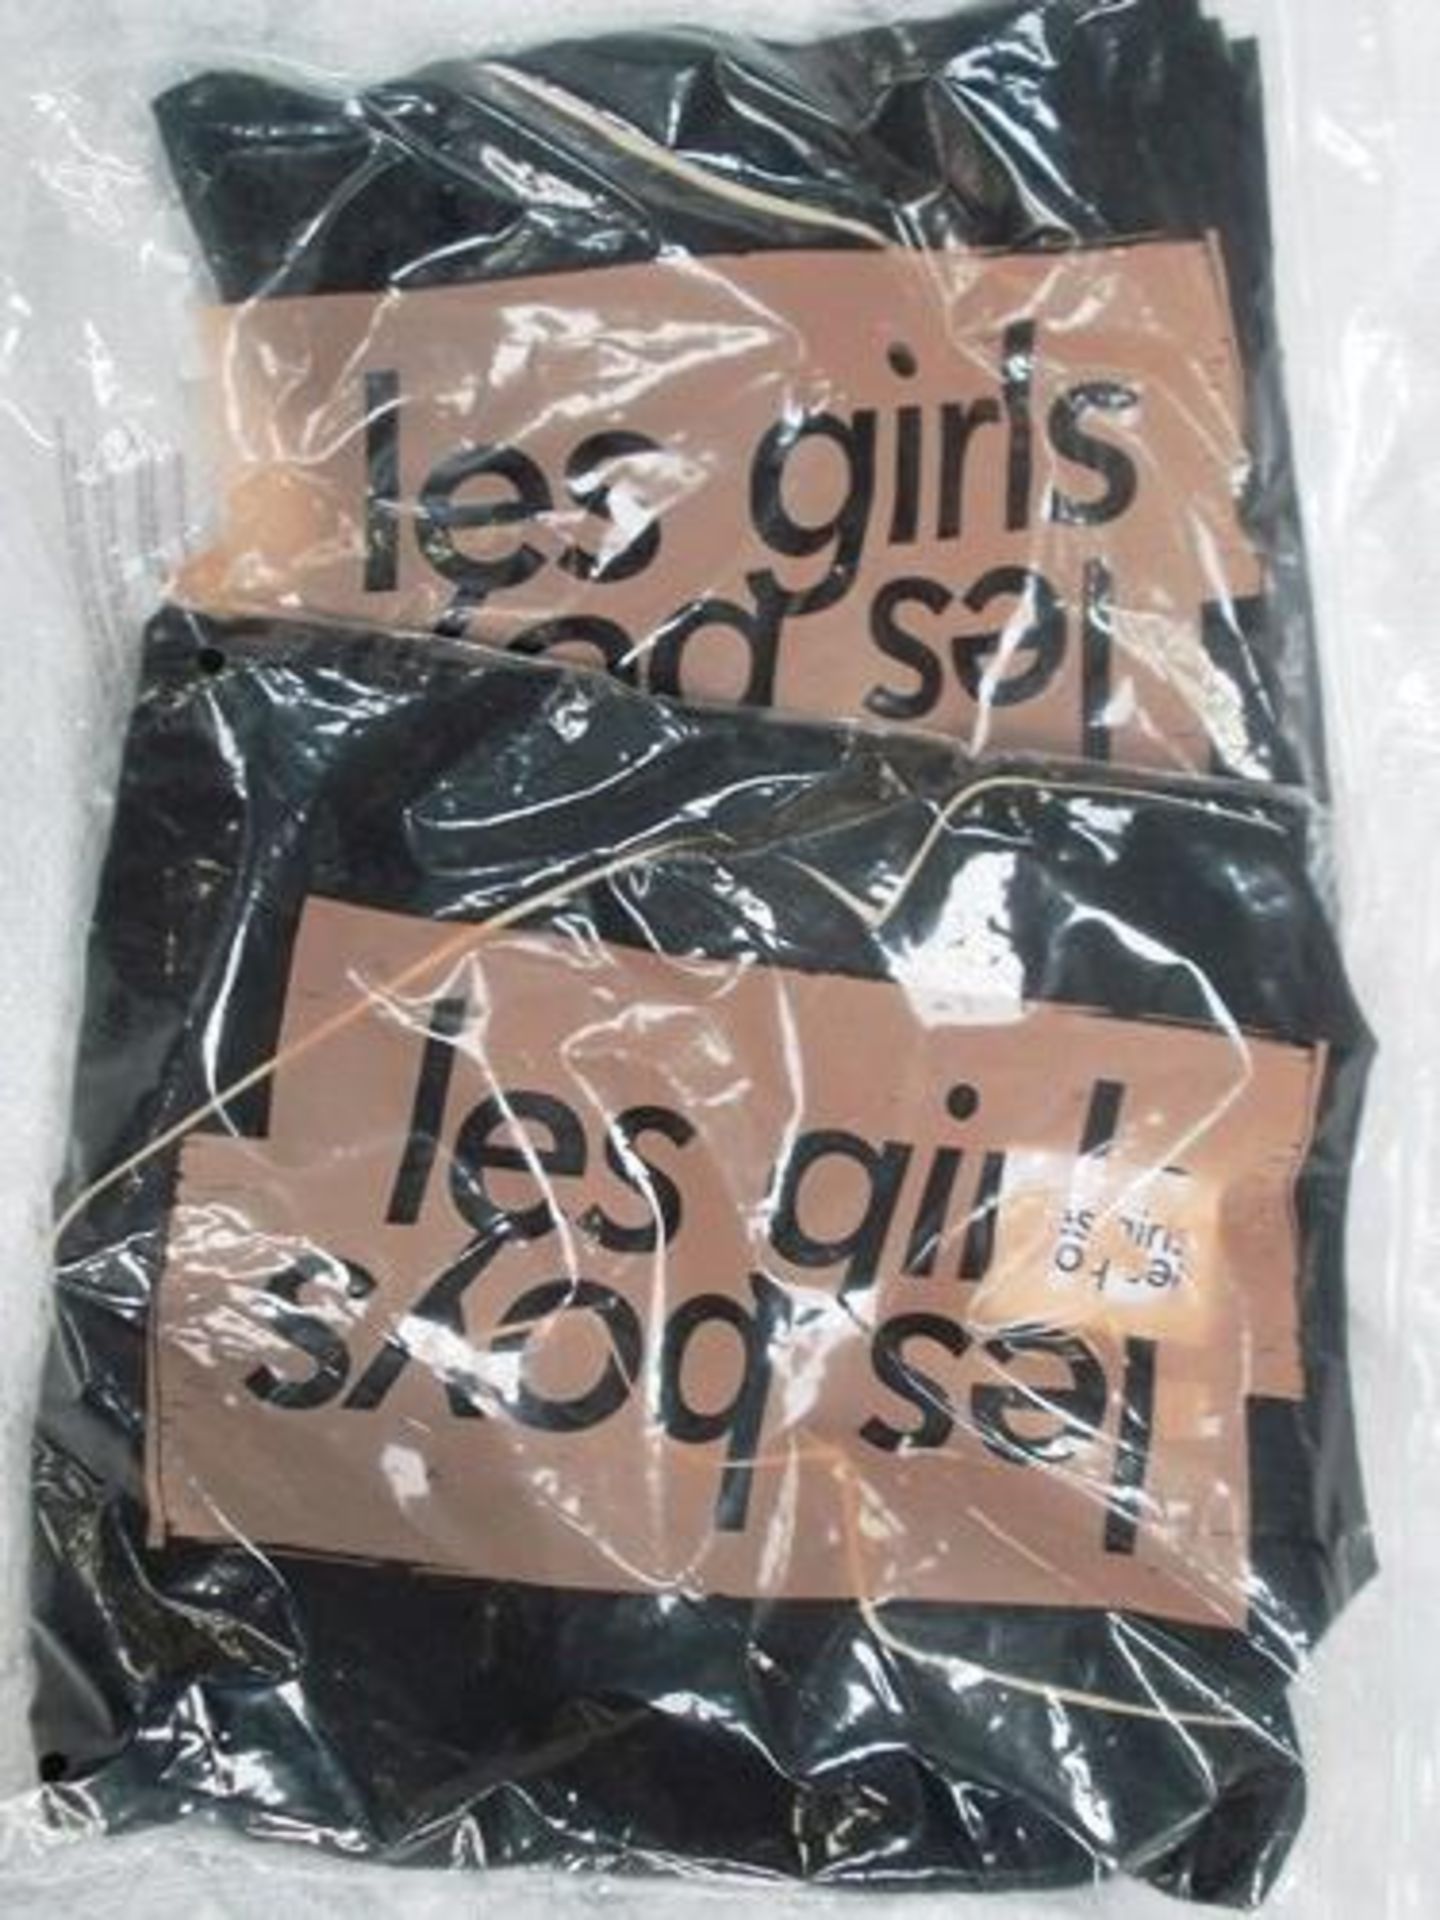 2 x pairs of Les Girls Les Boys pyjamas, size M - New (E7flr9)